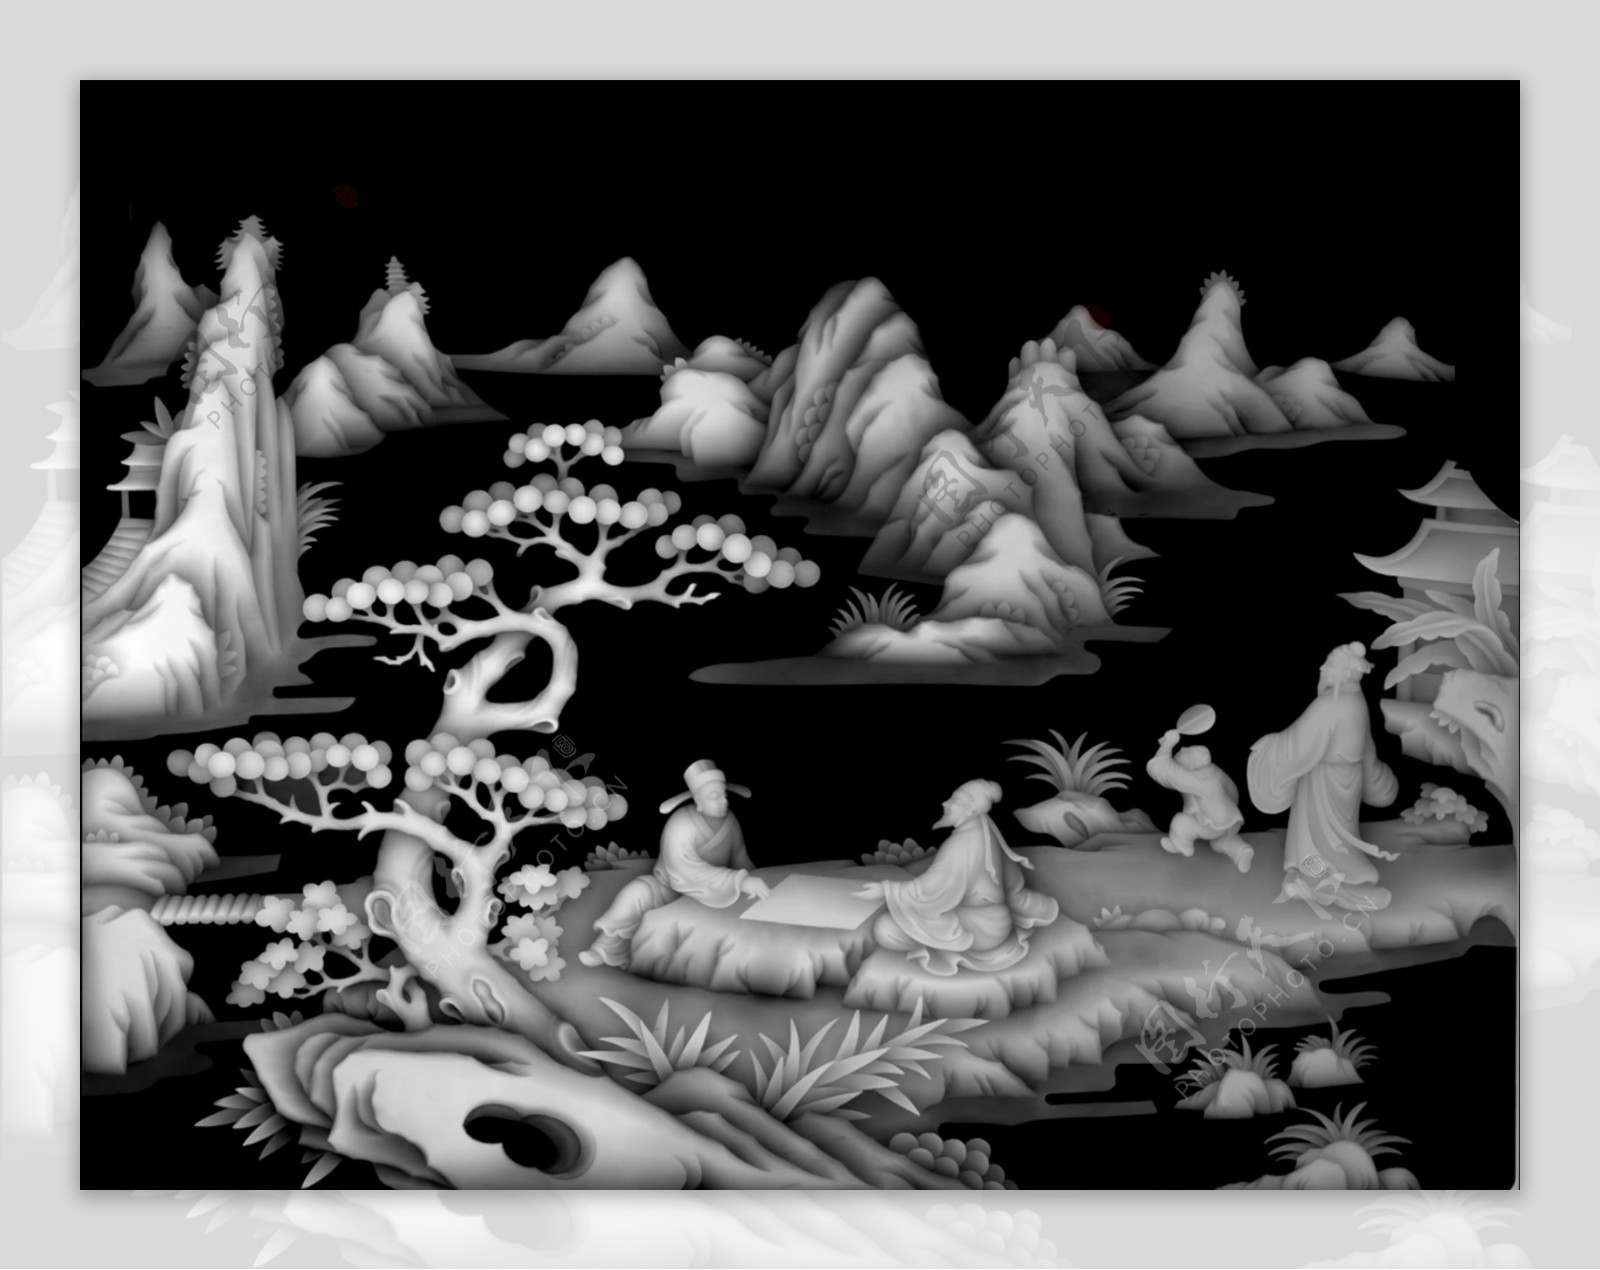 山水风景人物下棋作画浮雕灰度图